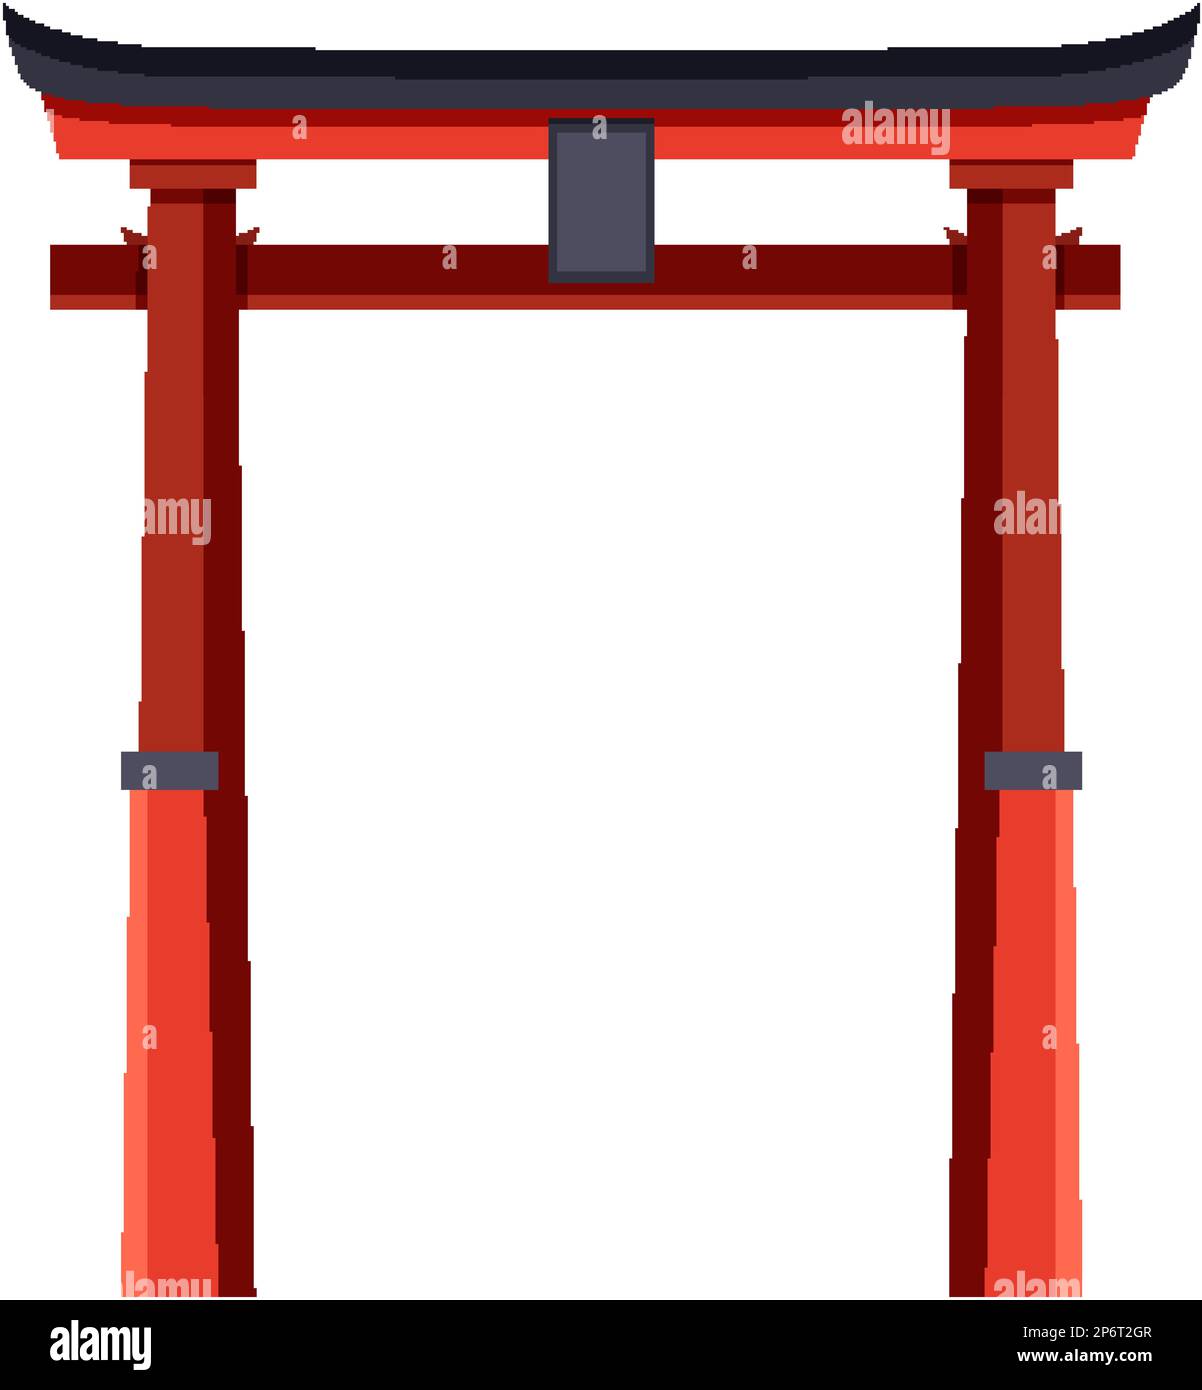 Torii Japanese Gate Vector illustration Stock Vector